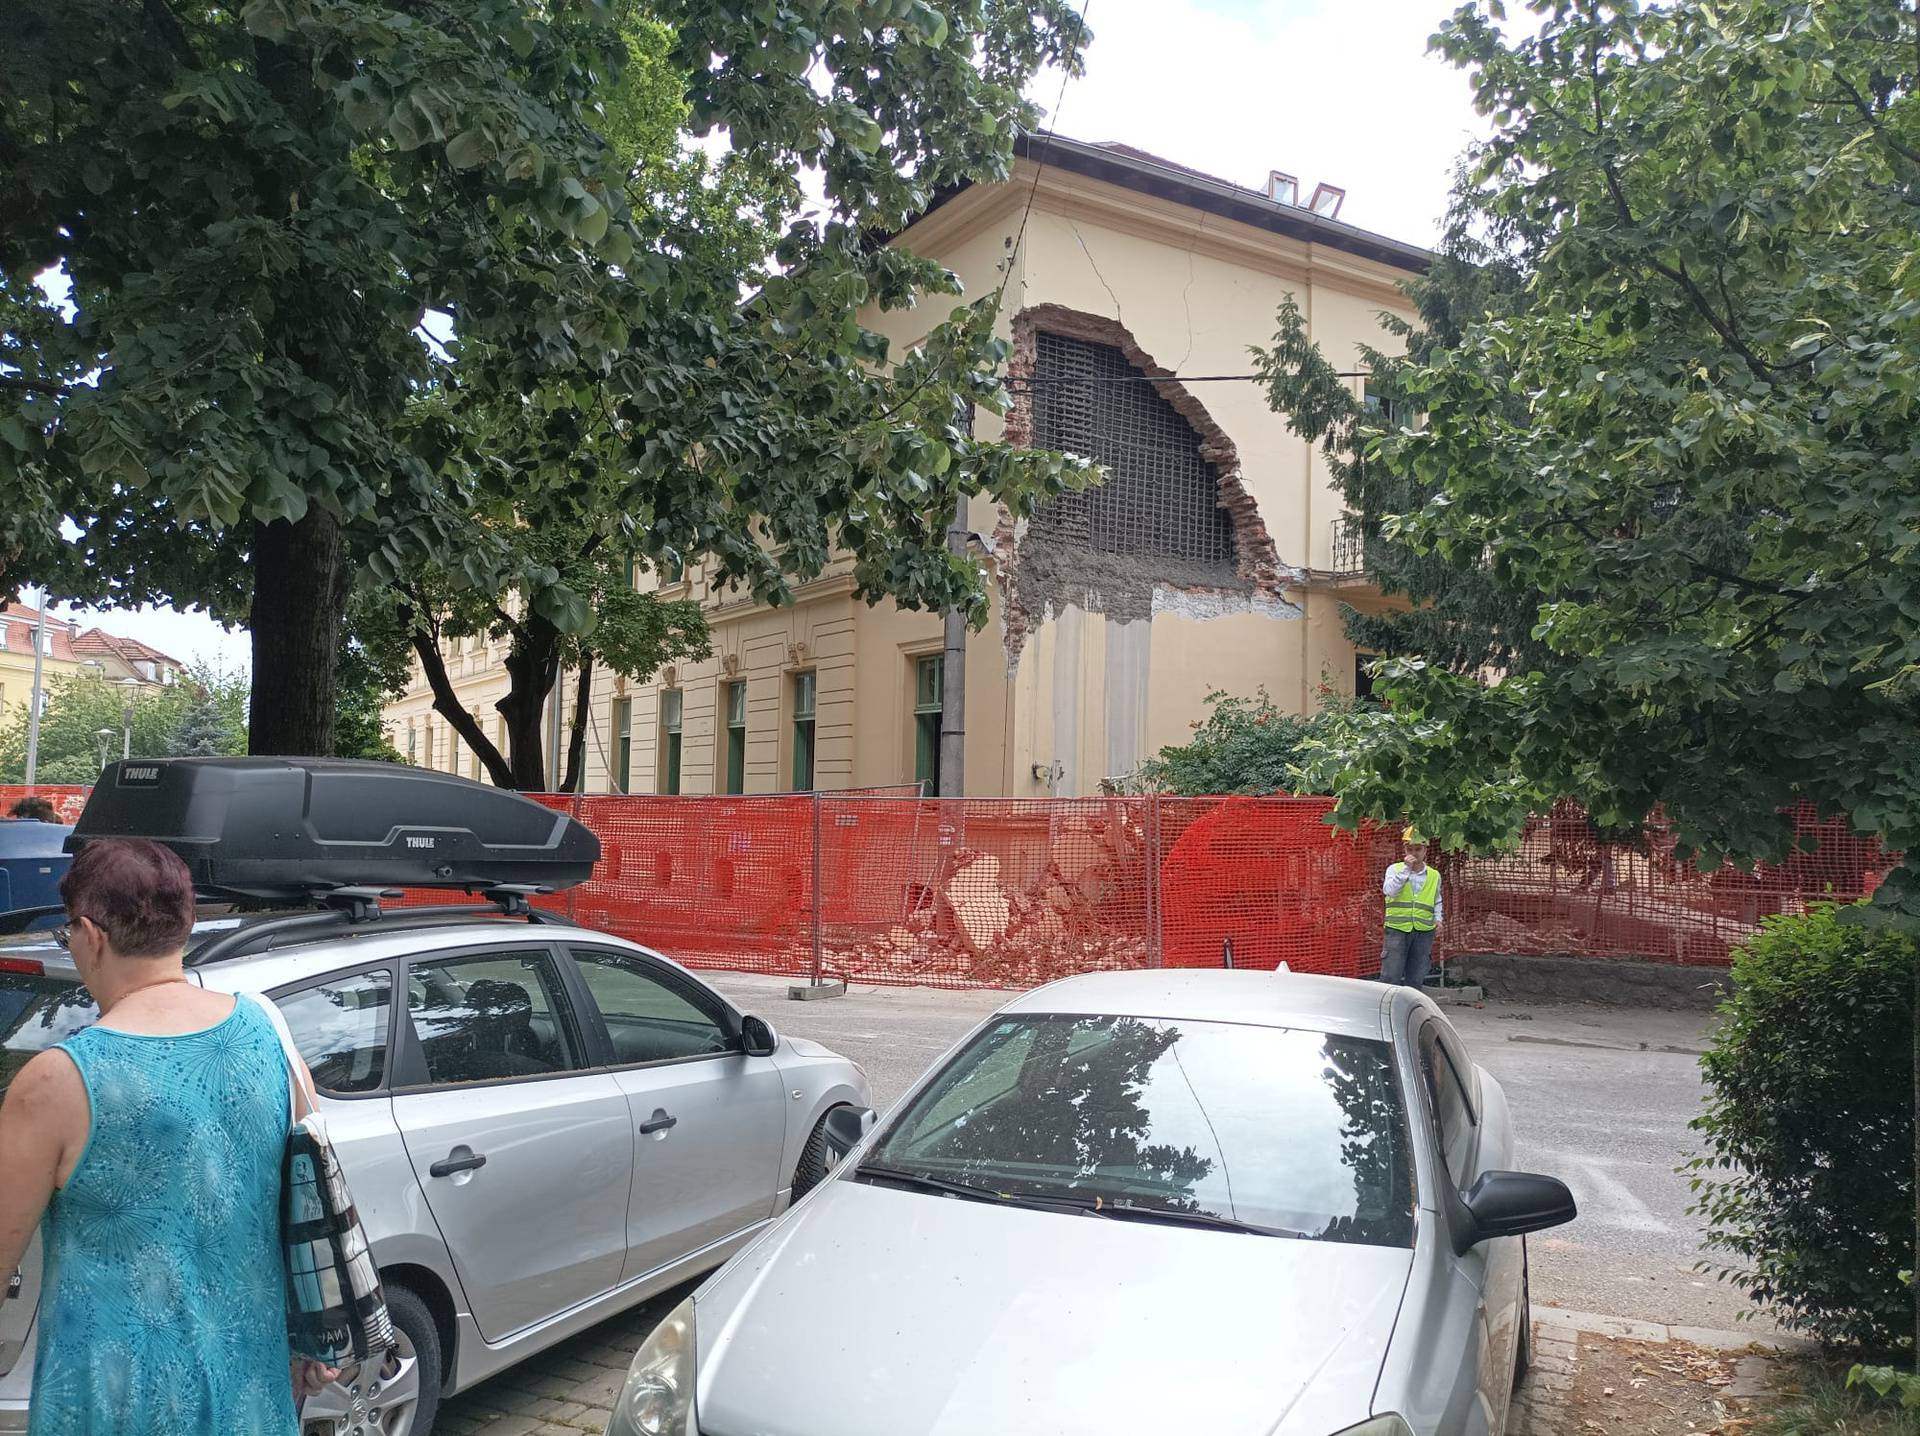 VIDEO Urušio se zid Upravne zgrade KBC Sestre milosrdnice: 'Komadi zida padali su po cesti'